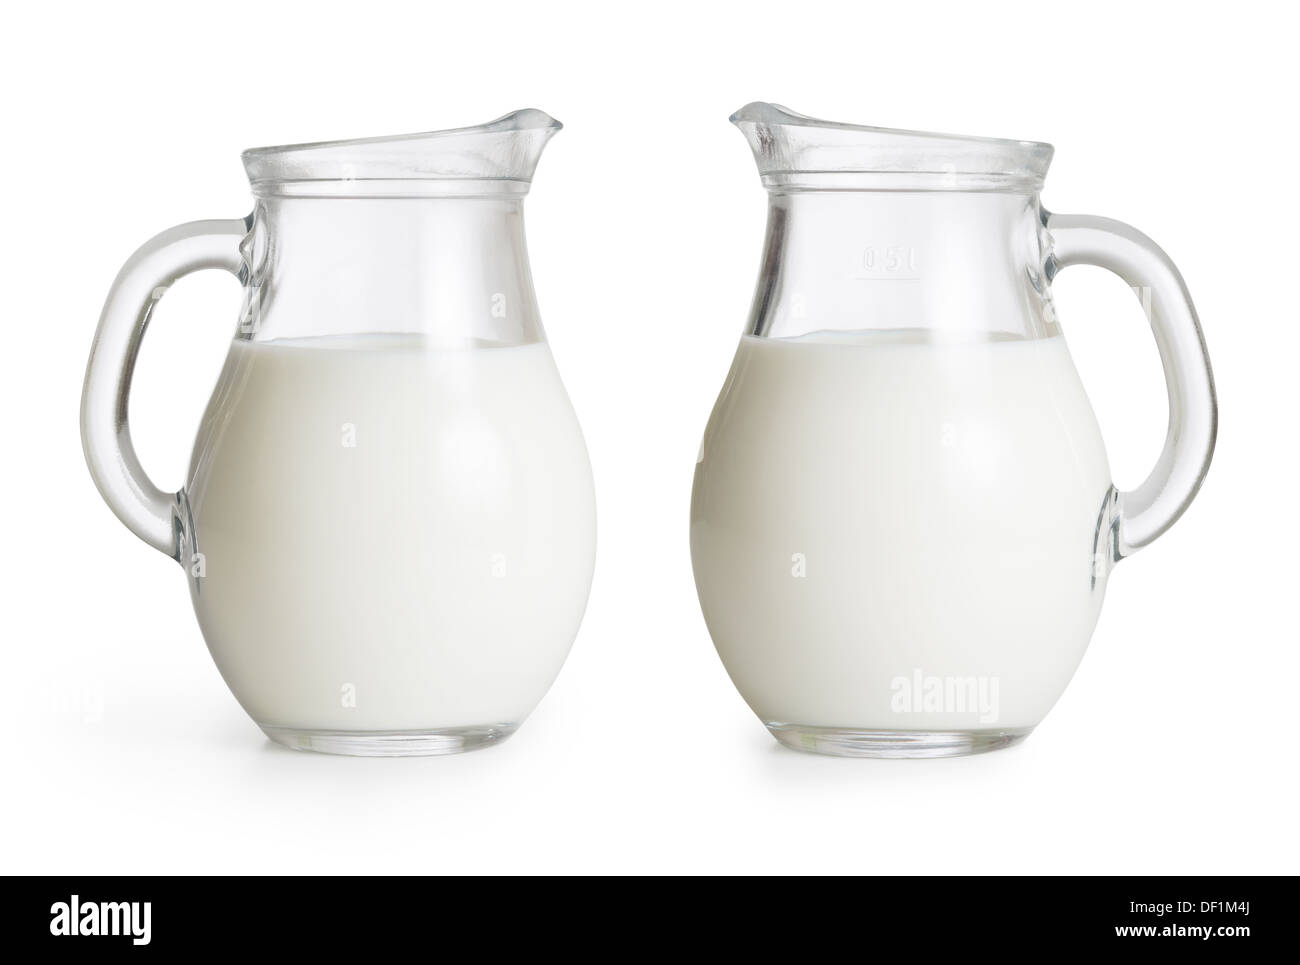 Conjunto de jarras de leche de vidrio aislados. Trazado de recorte sin sombras está incluido. Foto de stock